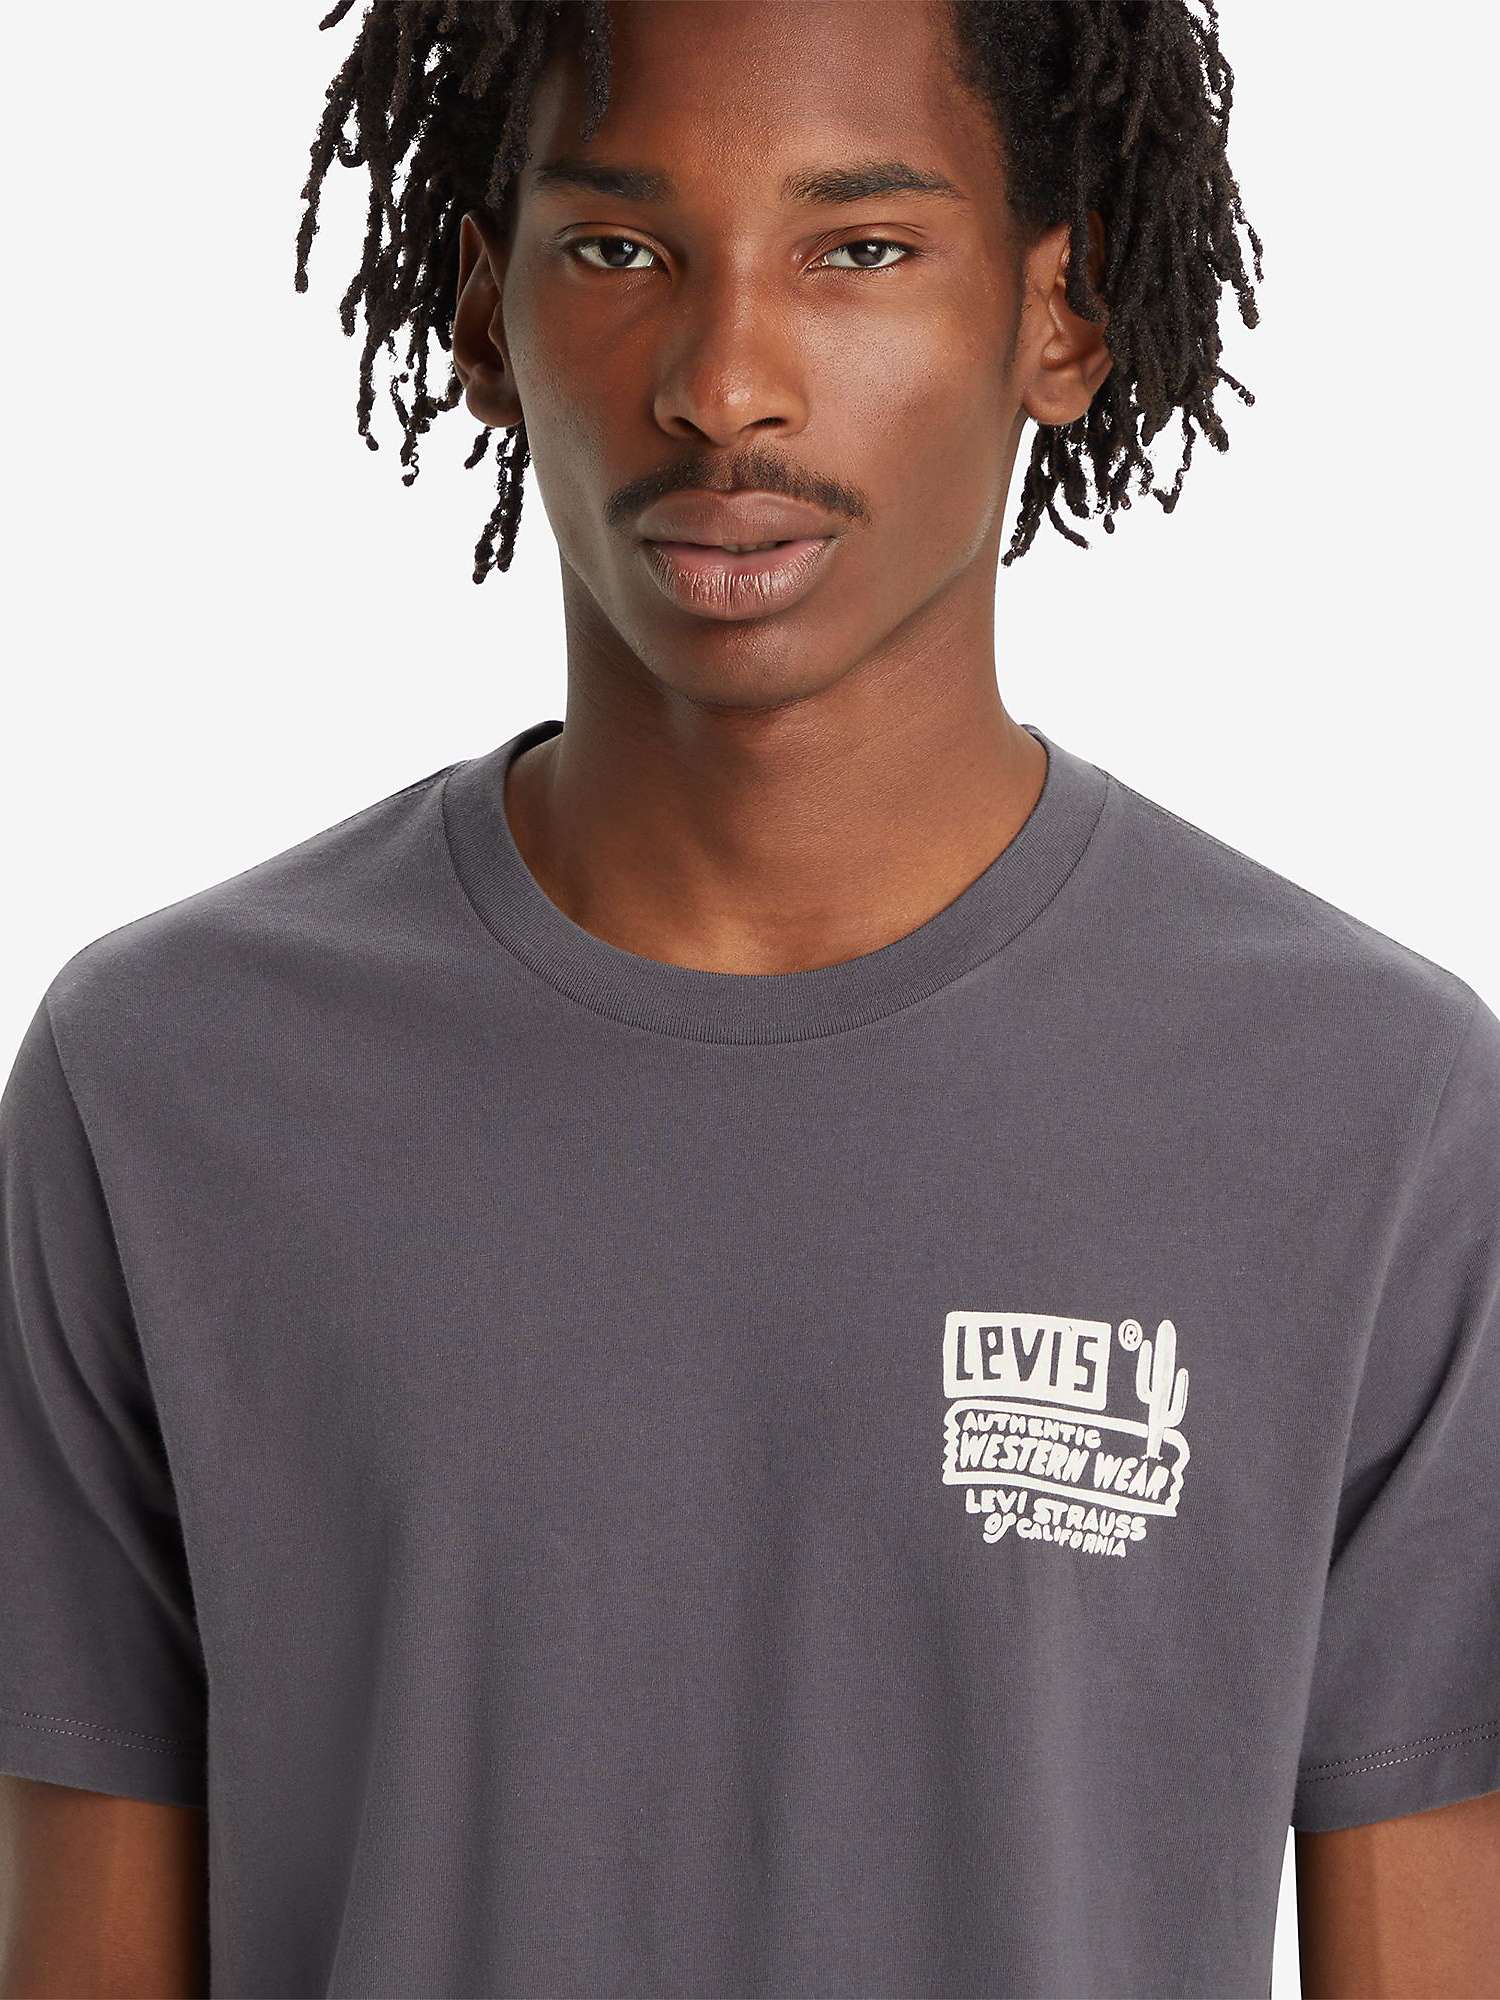 Buy Levi's Graphic Crewneck T-Shirt, Space Cowboy Ash Online at johnlewis.com